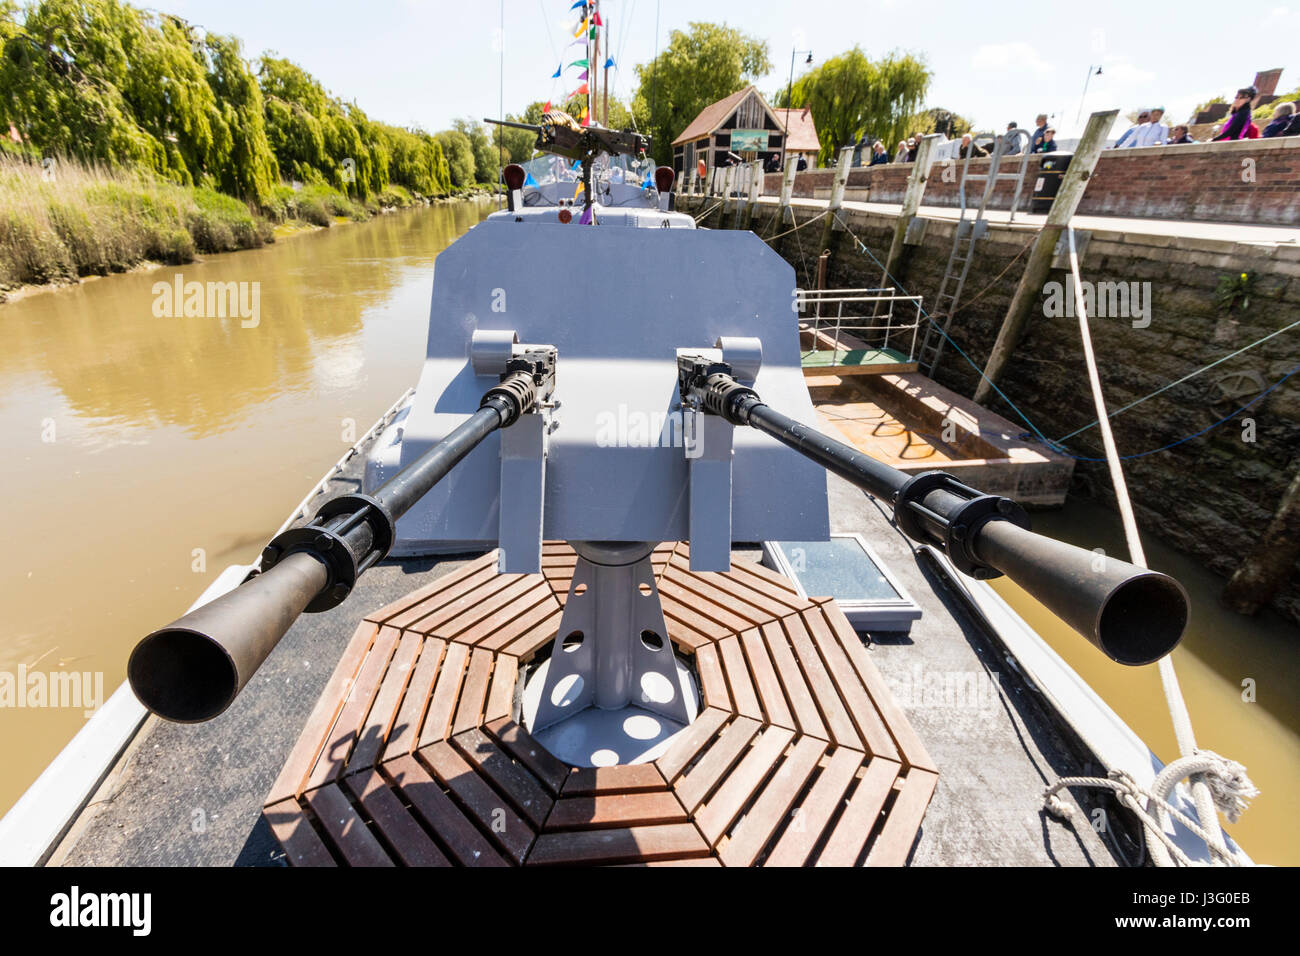 Gruß an die 40er Re-enactment Veranstaltung. P22 Rhein kanonenboot. Breite Winkel nach vorn Turm mit zwei Maschinengewehre. Stockfoto